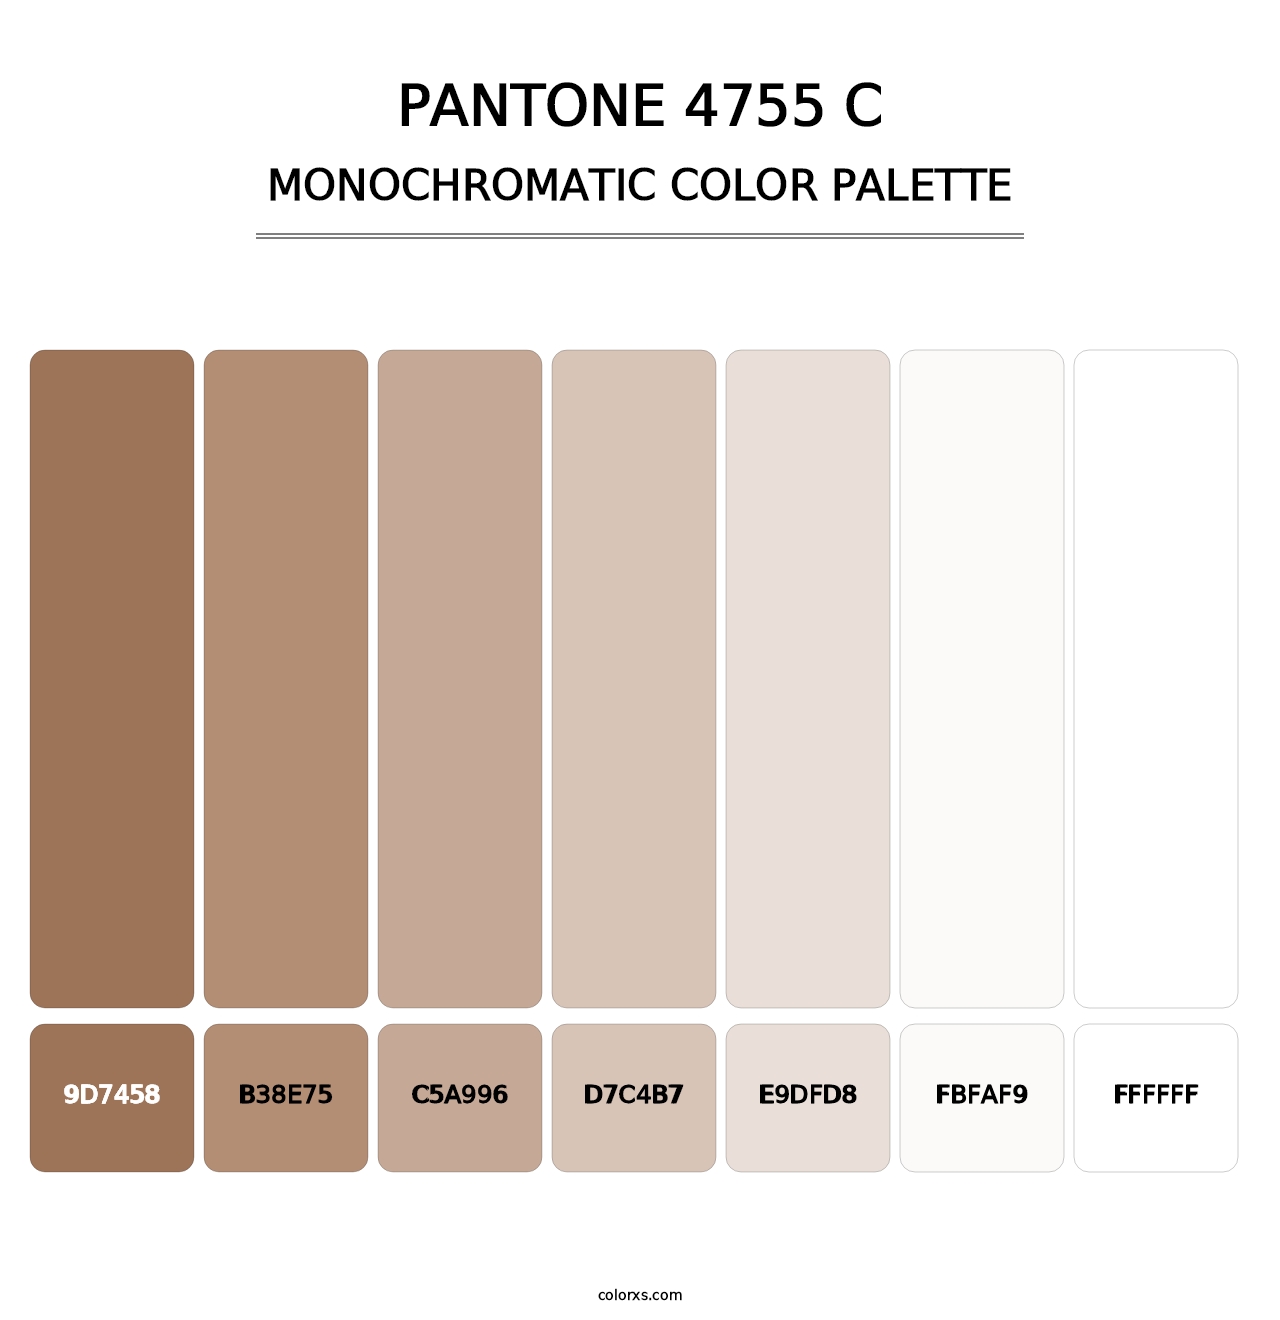 PANTONE 4755 C - Monochromatic Color Palette